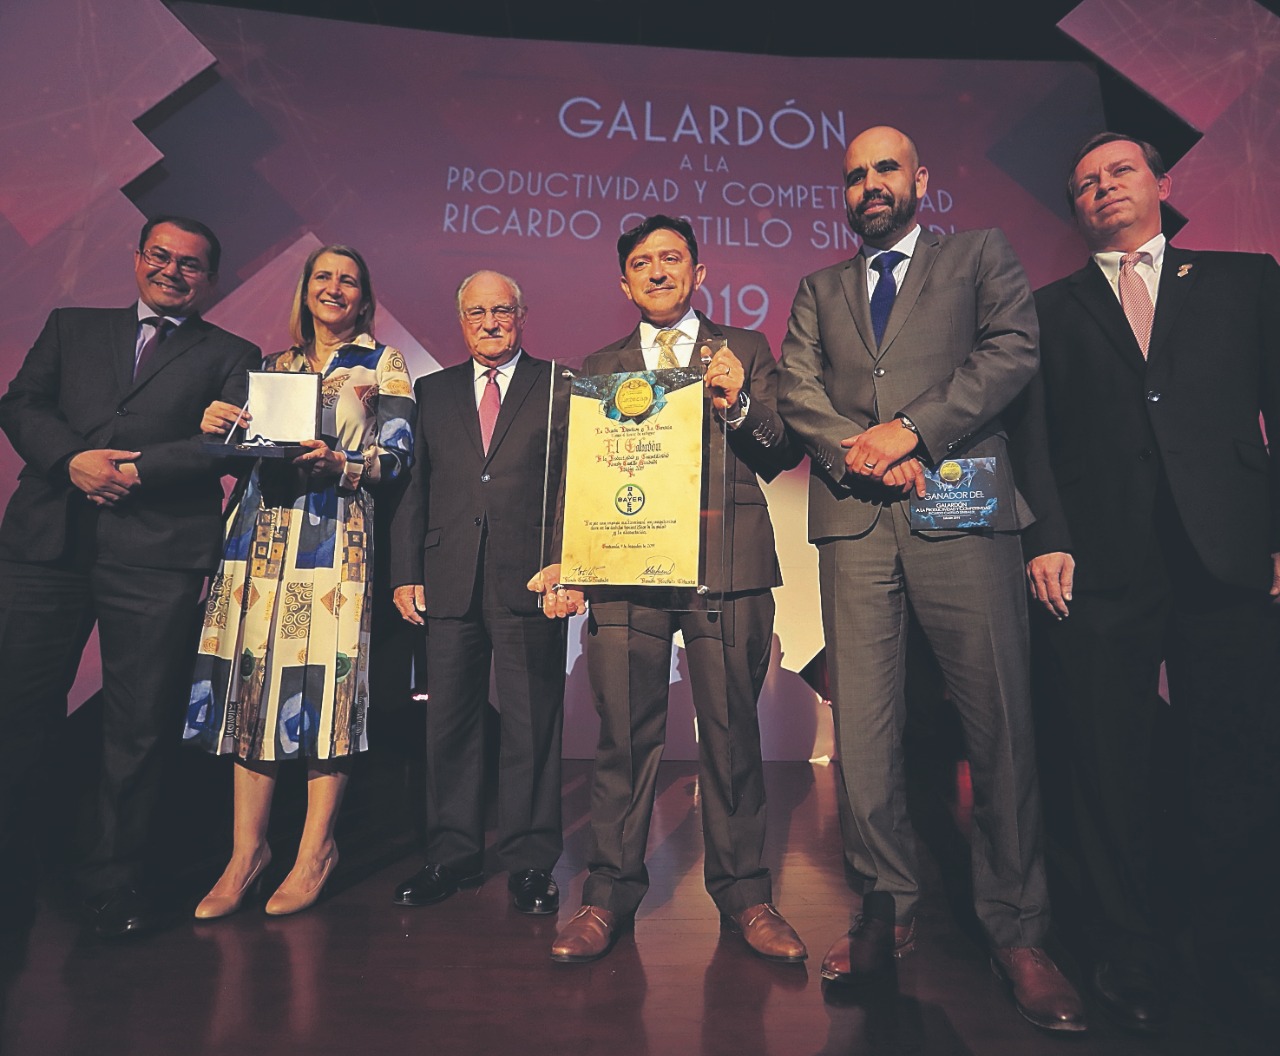 Representantes de la empresa Bayer reciben el Galardón a la Productividad y Competitividad Ricardo Castillo Sinibaldi, quien los acompaña (de traje negro, al medio). (Foto Prensa Libre: Juan Diego González)